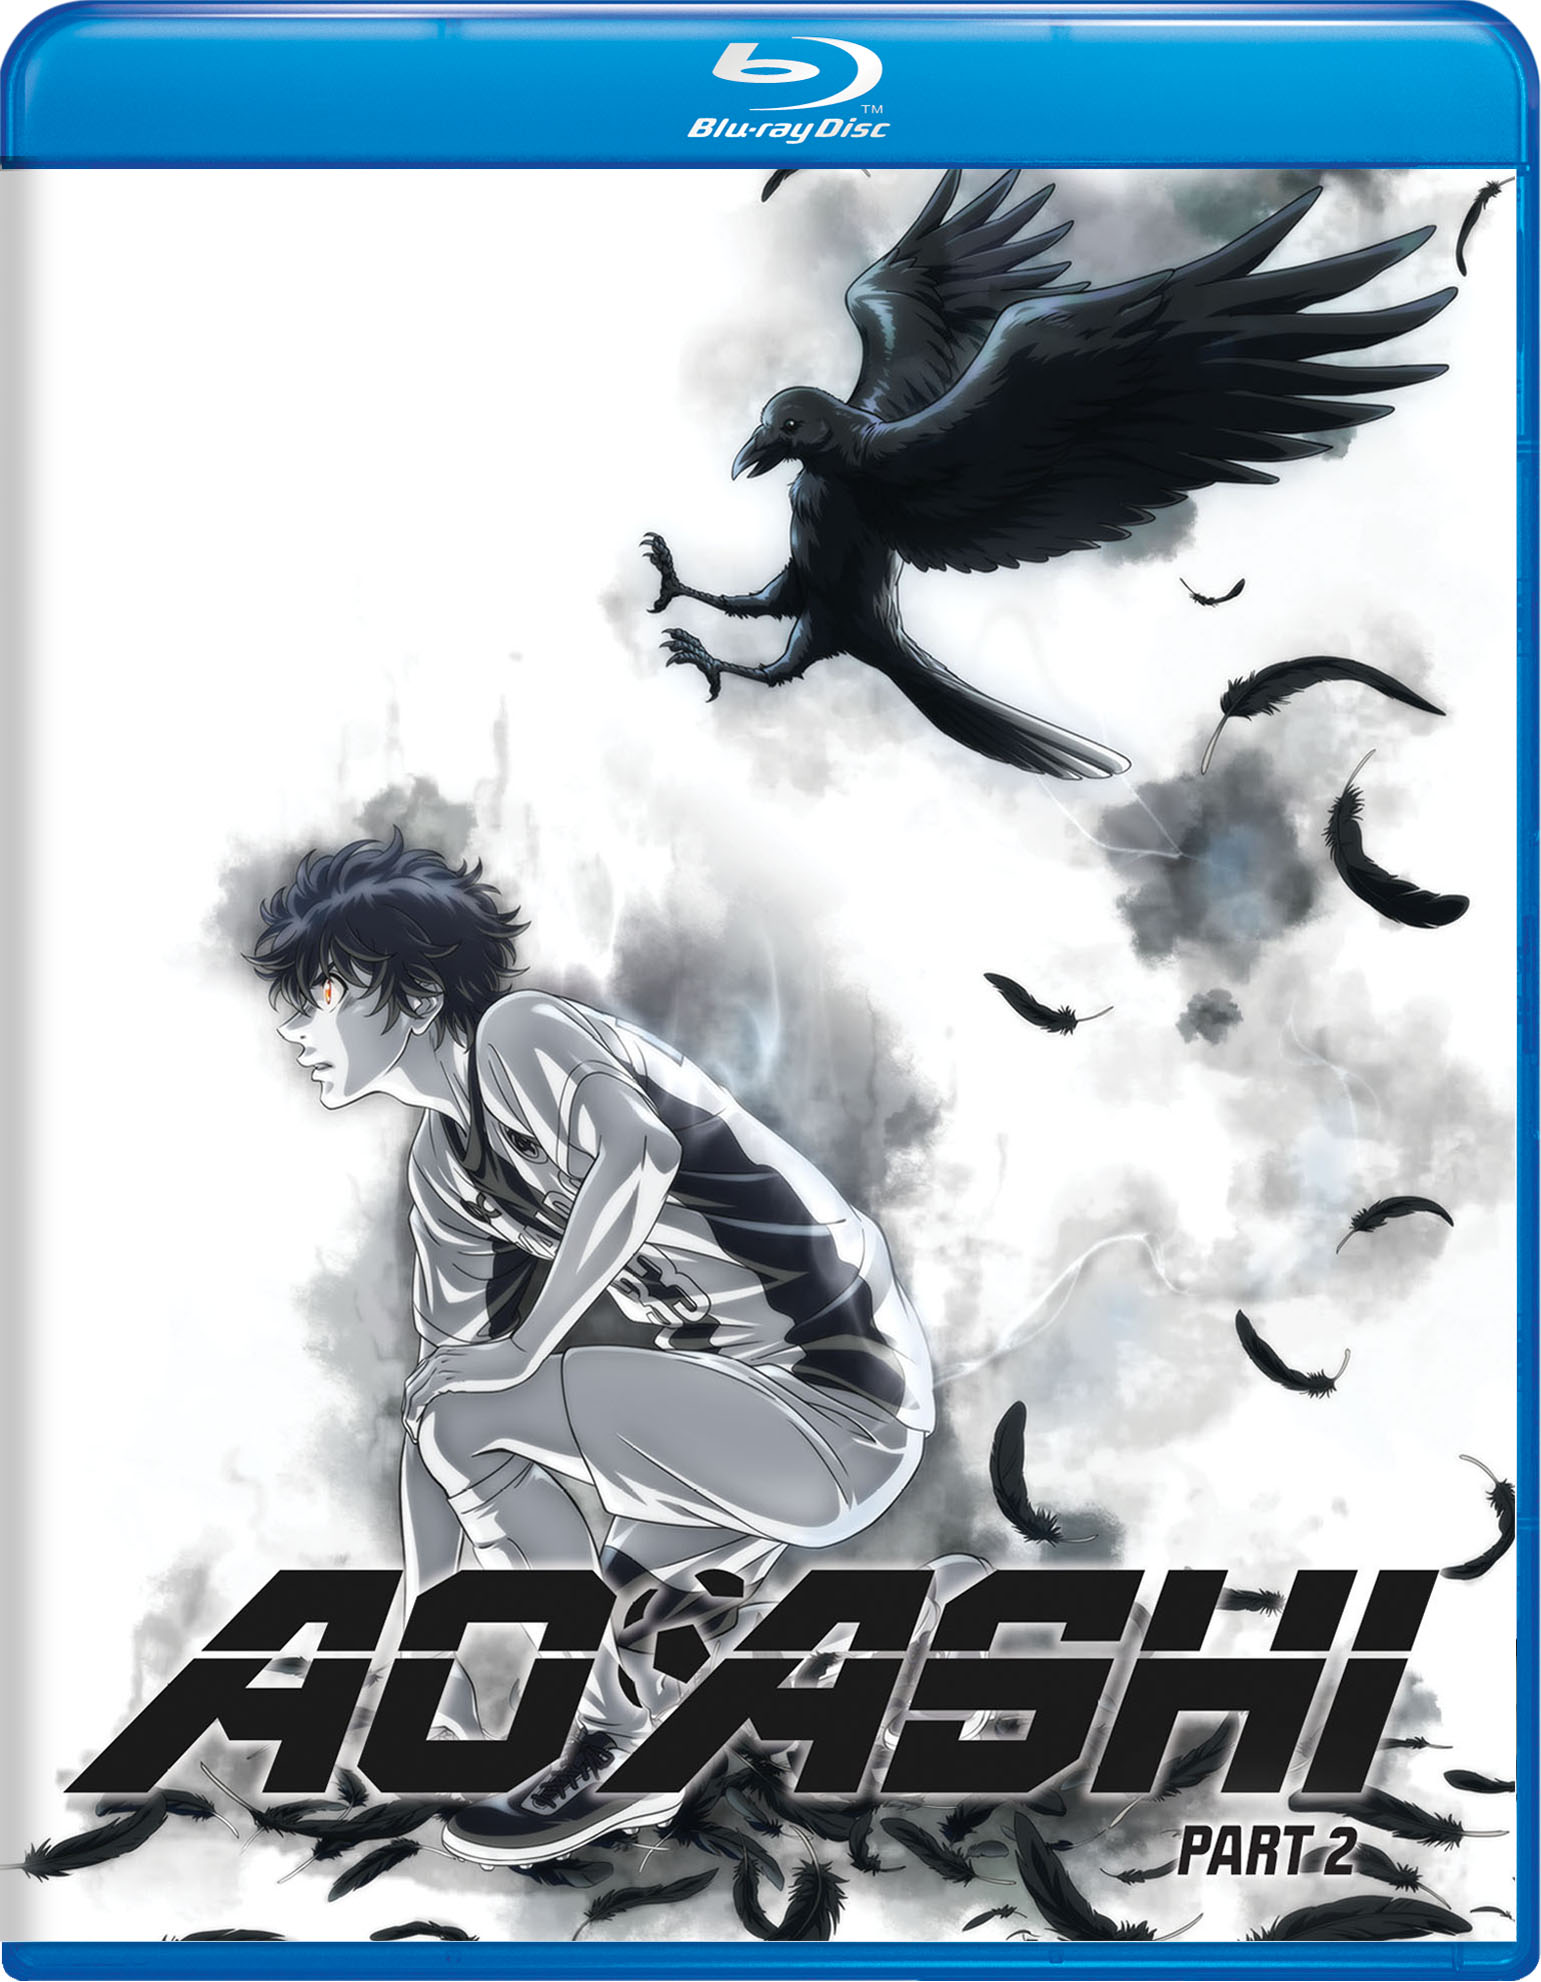 Aoashi: Season 1 - Part 2 - Blu-ray [ 2015 ]  - Anime Movies On Blu-ray - Movies On GRUV